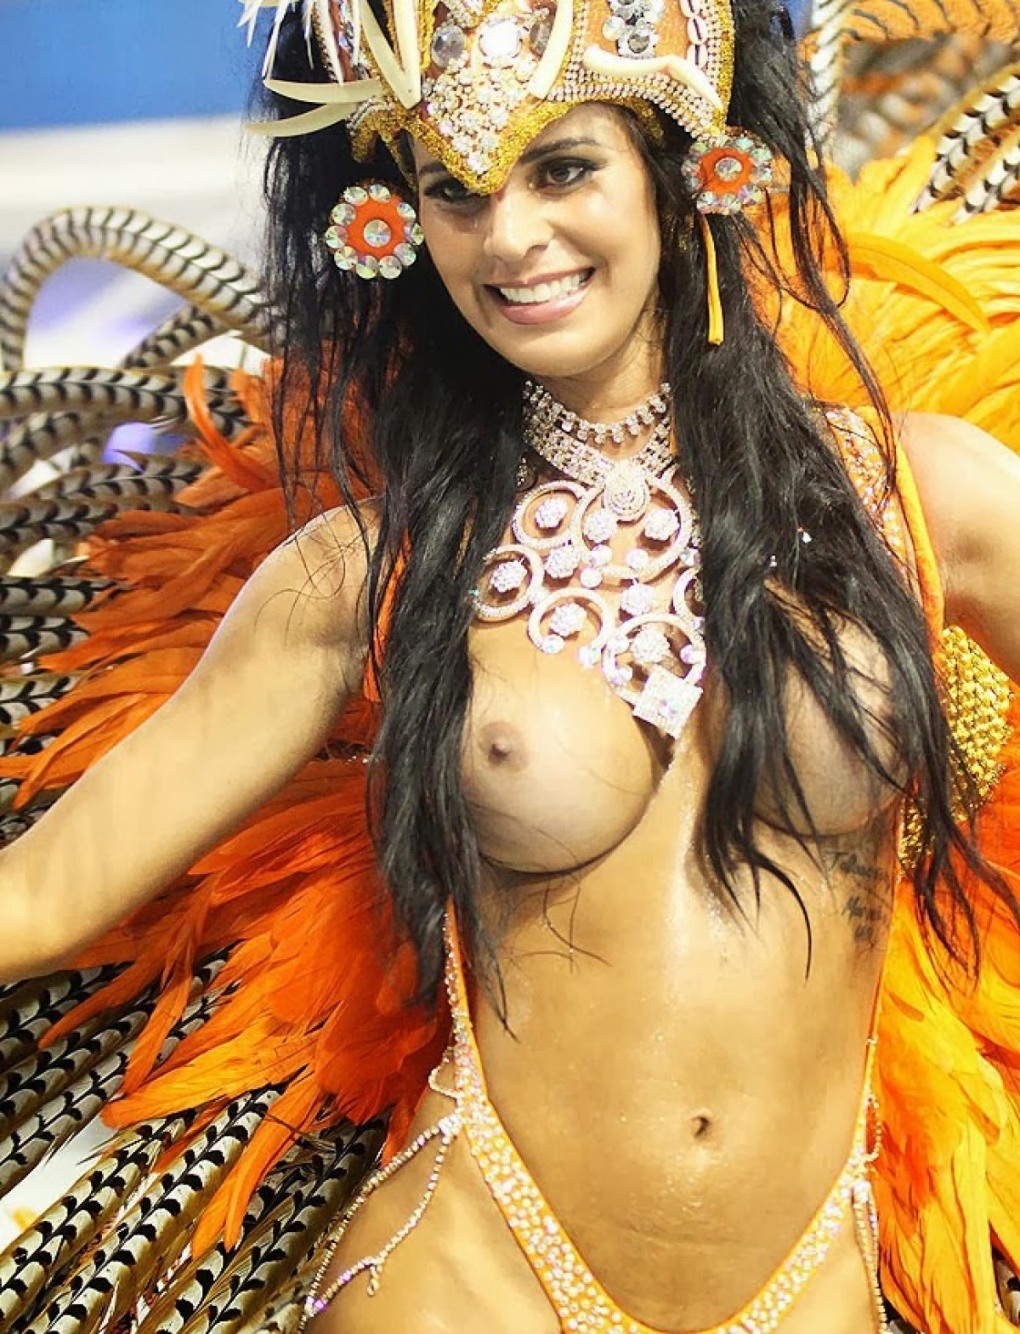 Бразильский карнавал - царство голых сисек! ( фото) ~ Мега-Порно